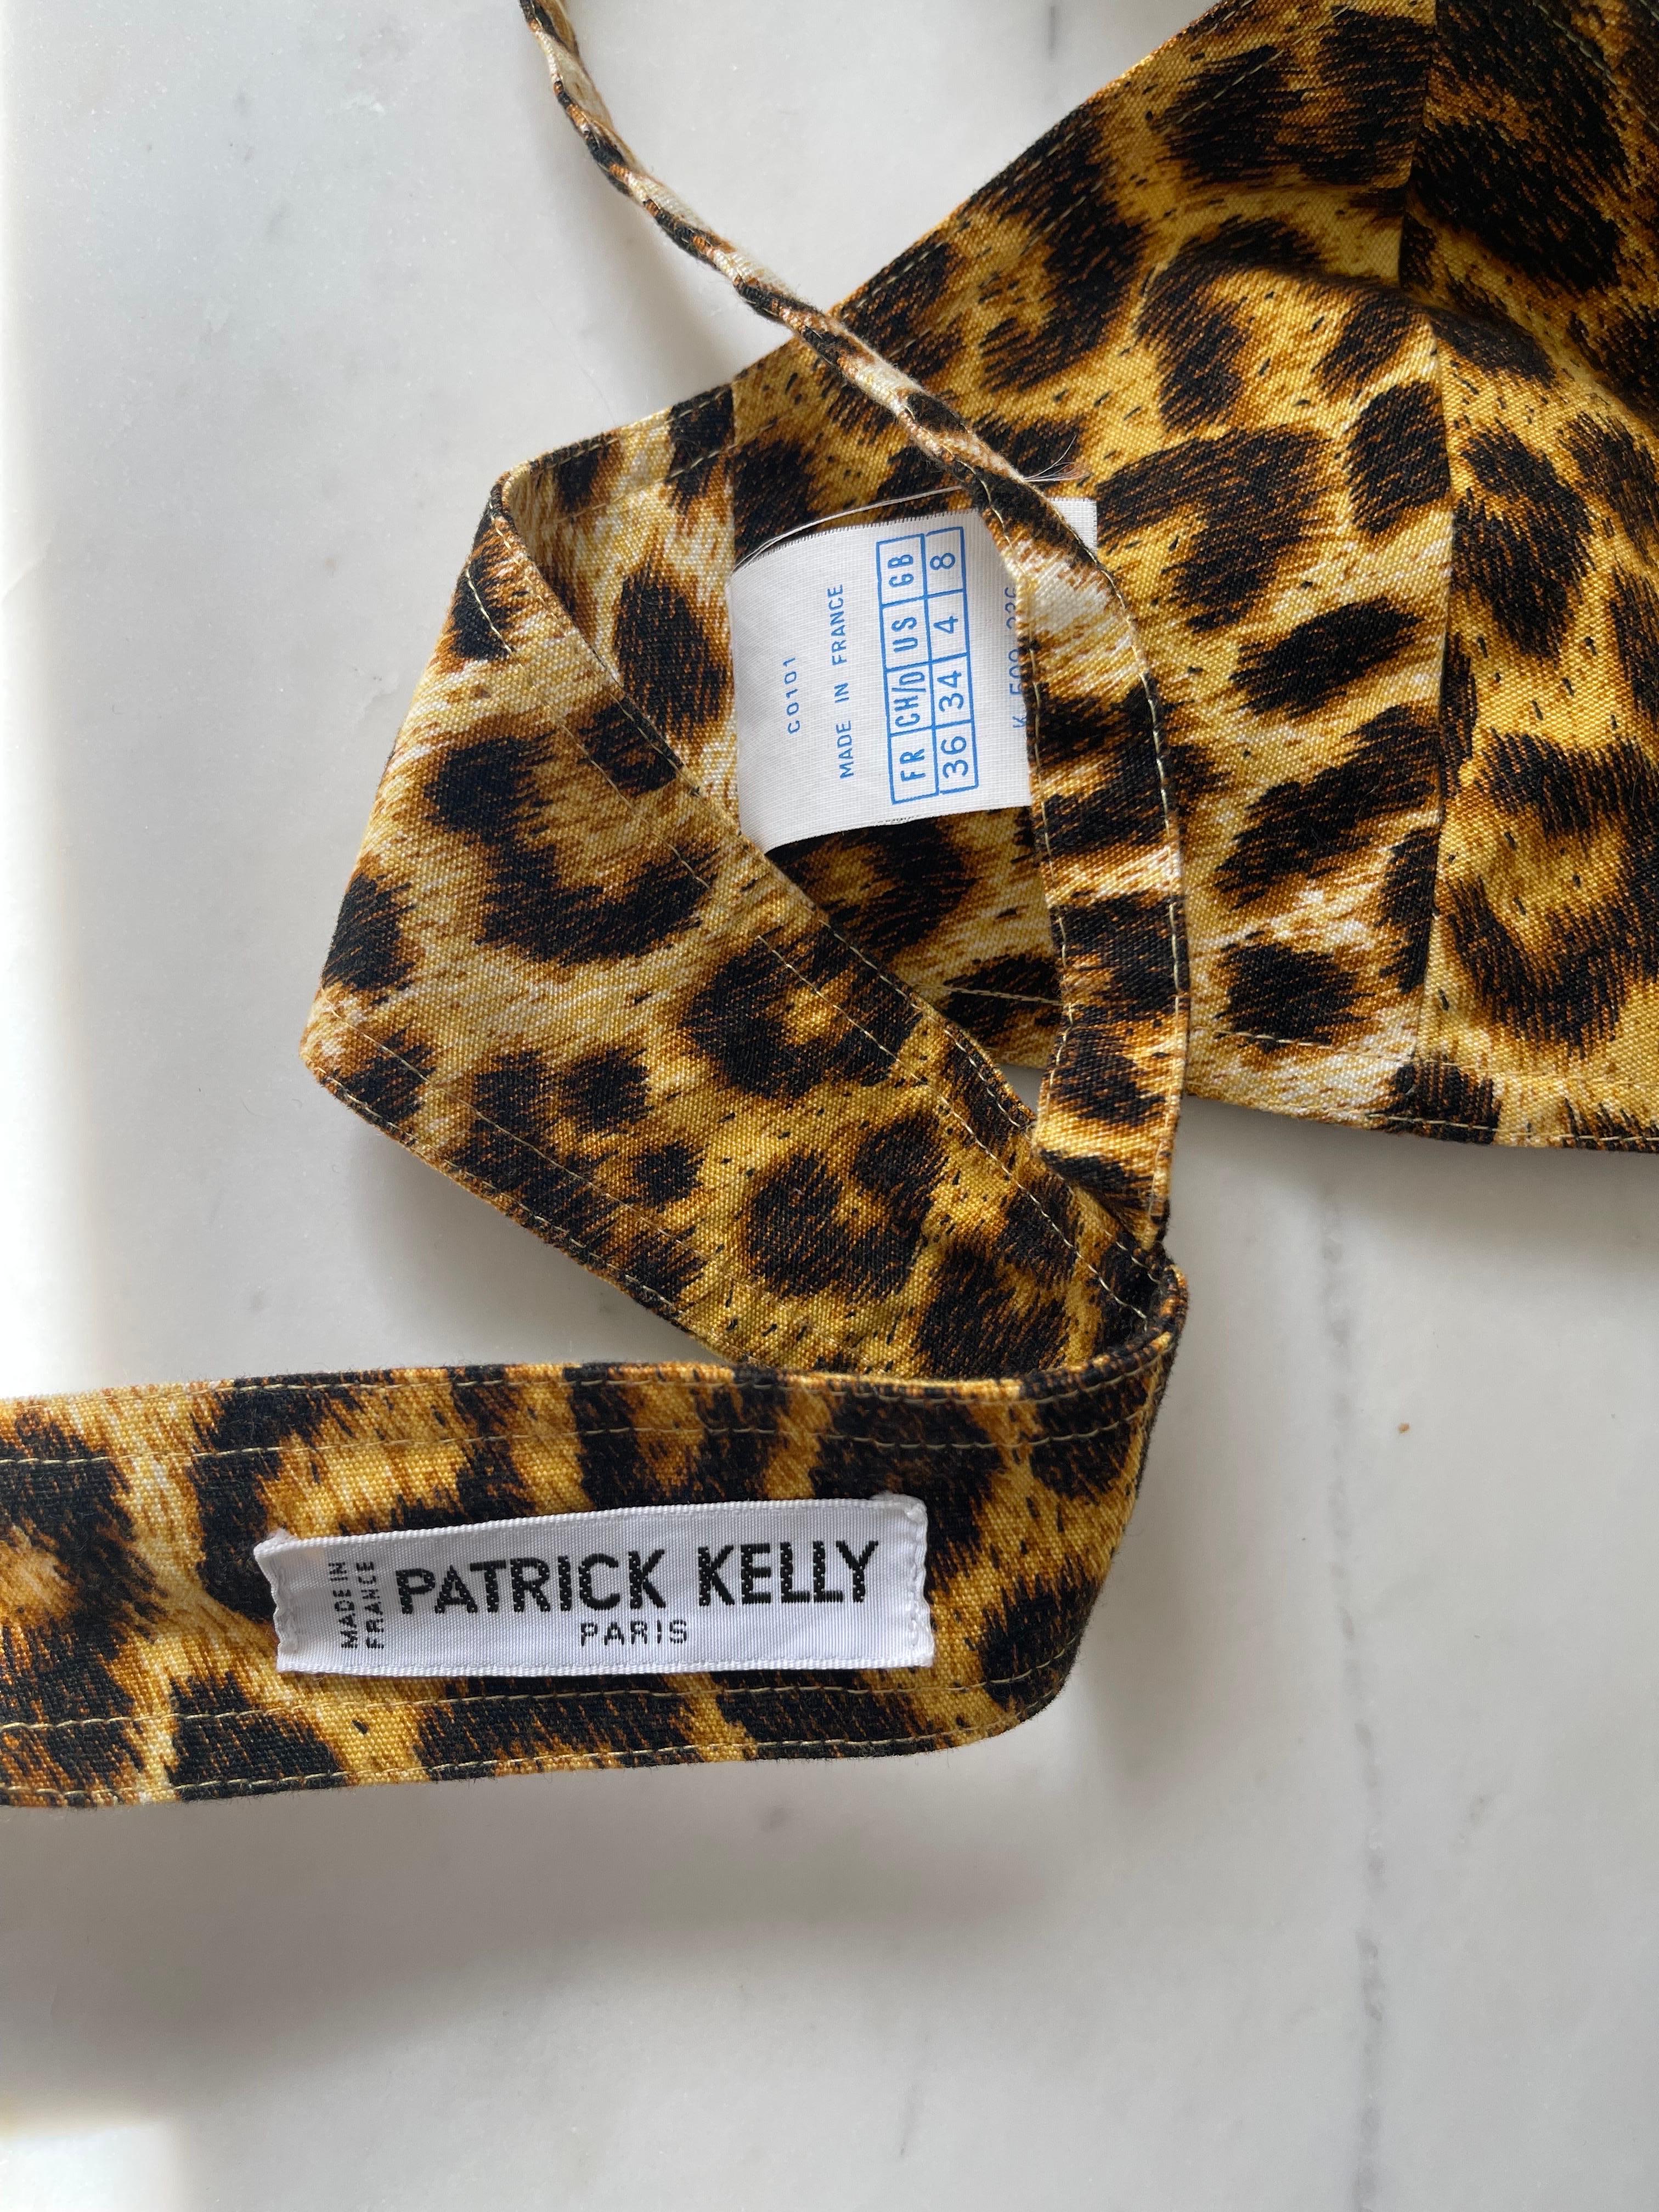 Très rare soutien-gorge / crop top PATRICK KELLY Paris en coton imprimé léopard des années 1980 ! Imprimé animalier classique. Se noue au centre du dos. A porter seul ou en superposition sous un blazer ou un cardigan. 
En excellent état. 
Fabriqué